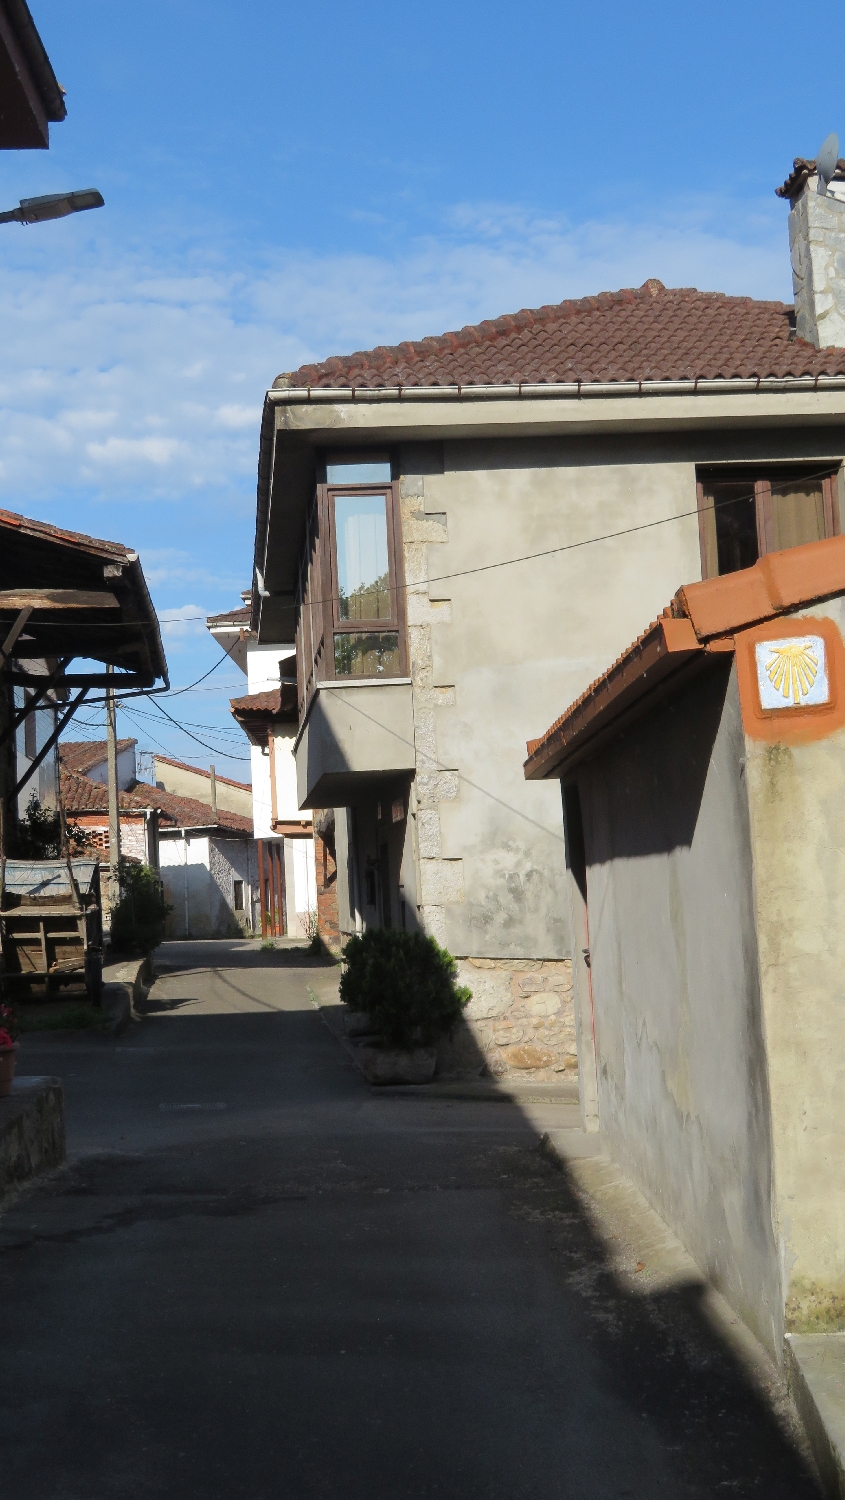 Camino Primitivo, Peñaflor, a településen a házfalakon helyezték el a nyilakat és a kagyló jelzéseket